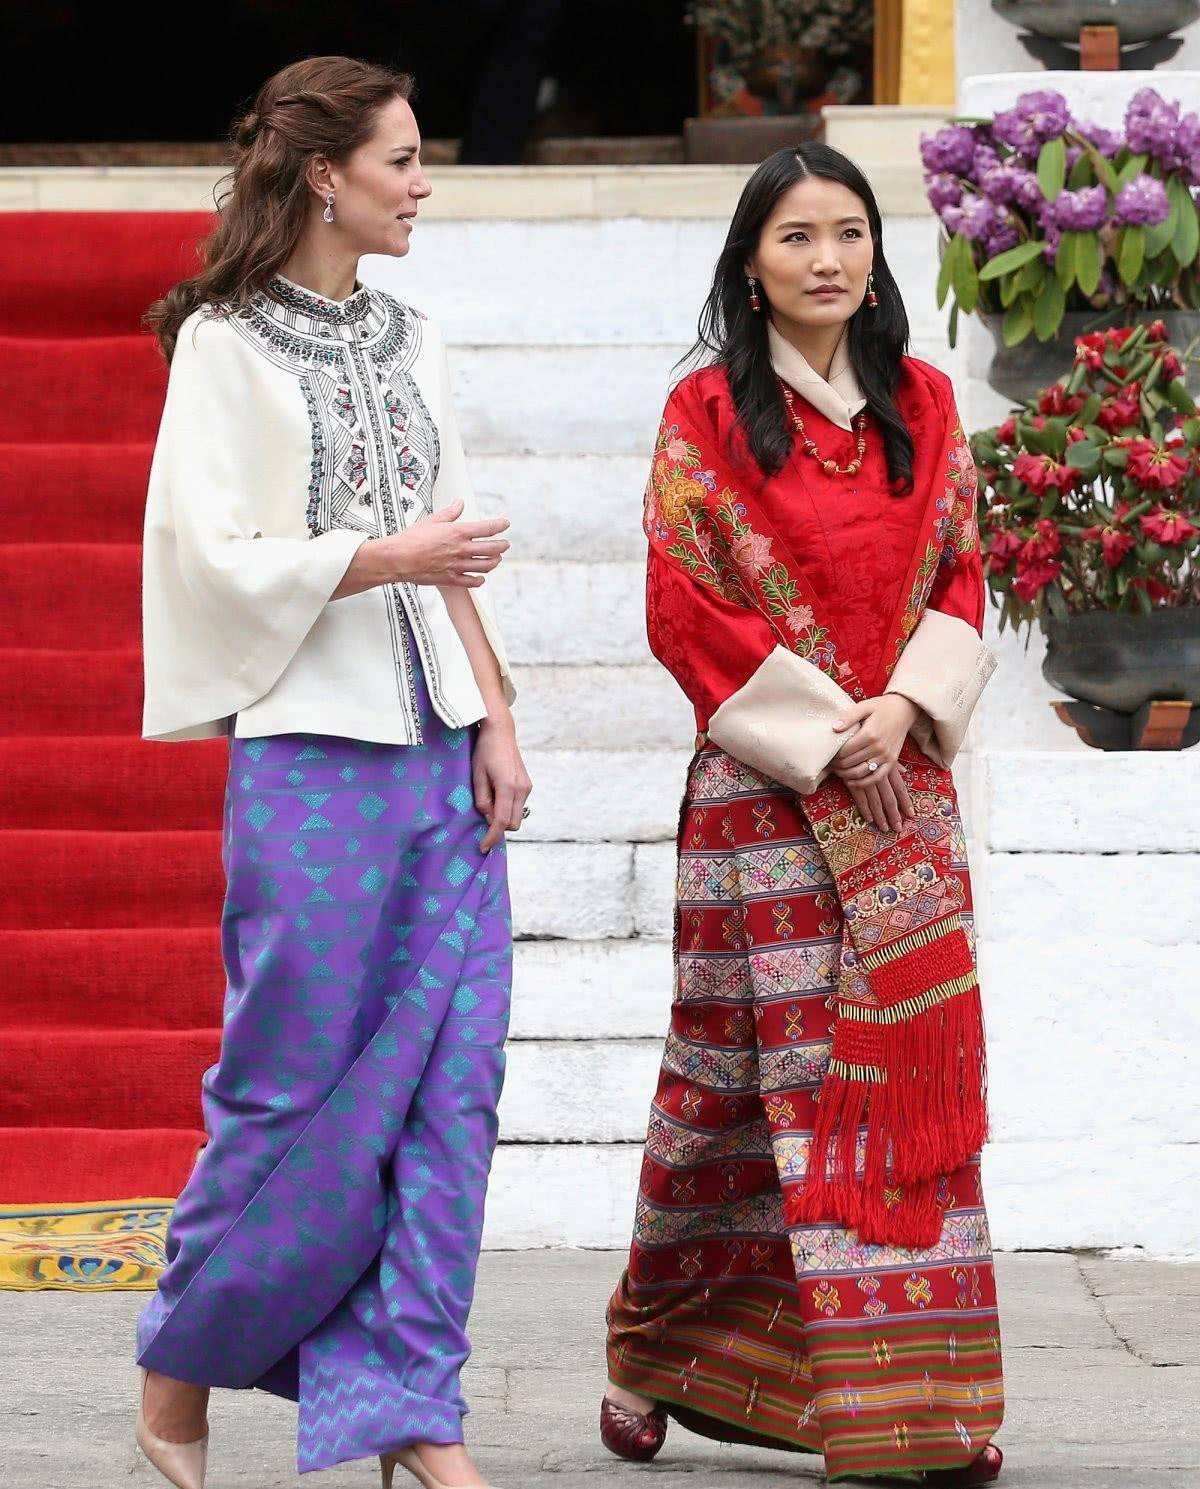 不丹美女图片